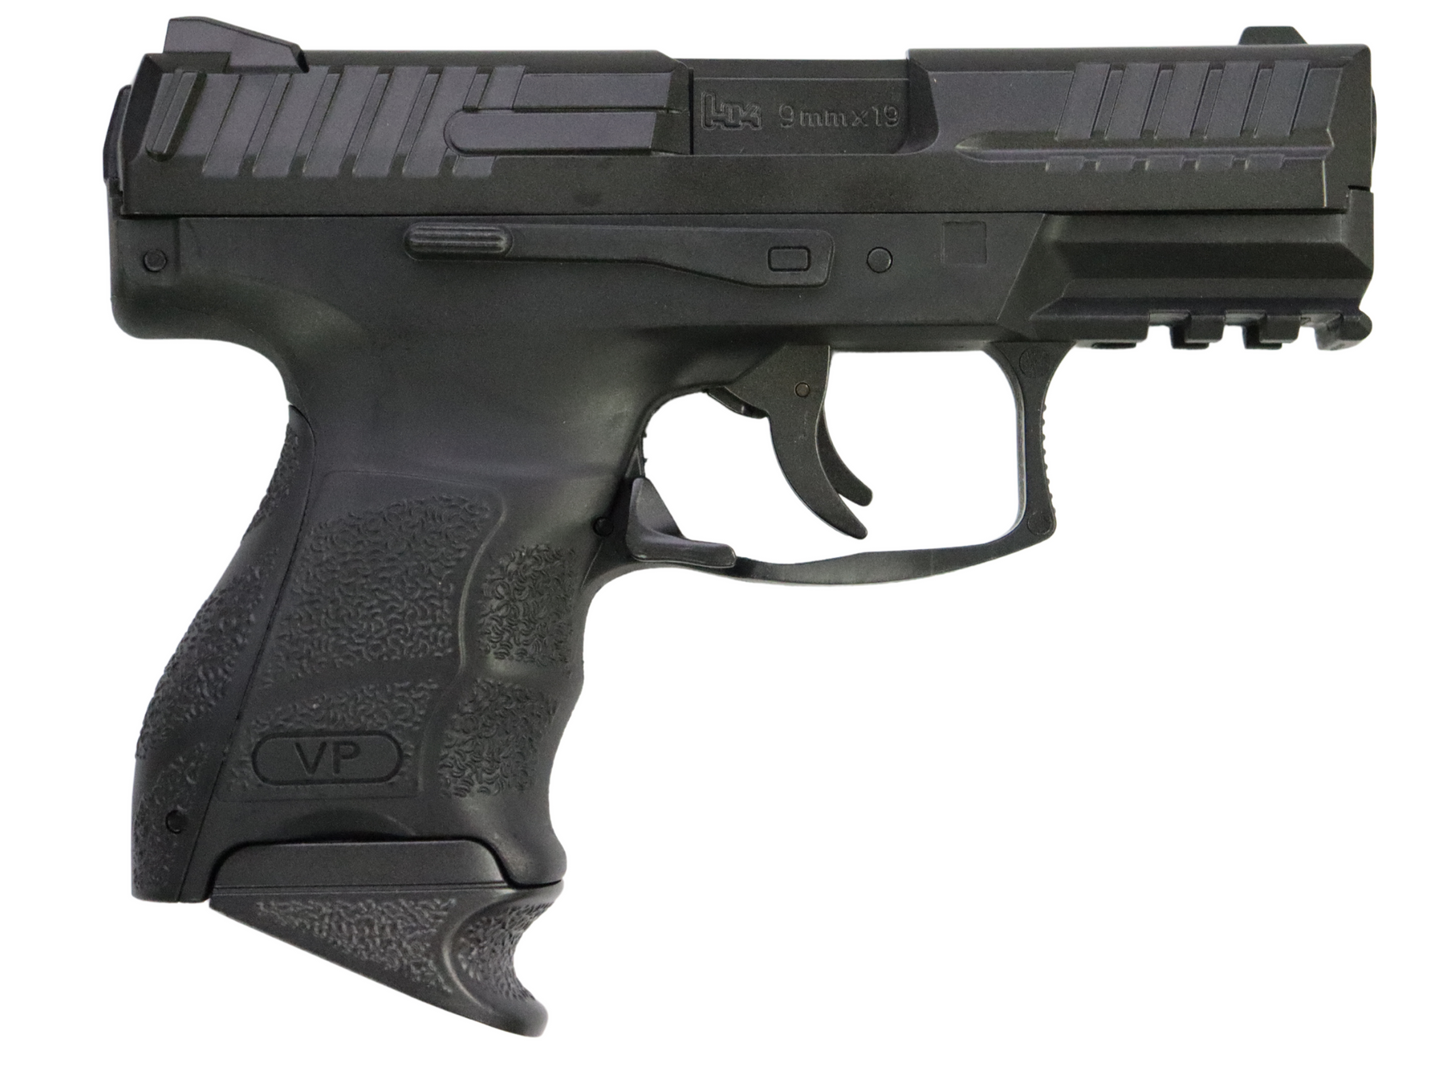 
                  
                    HK-VP9 Manual Gel Blaster Pistol - Black
                  
                